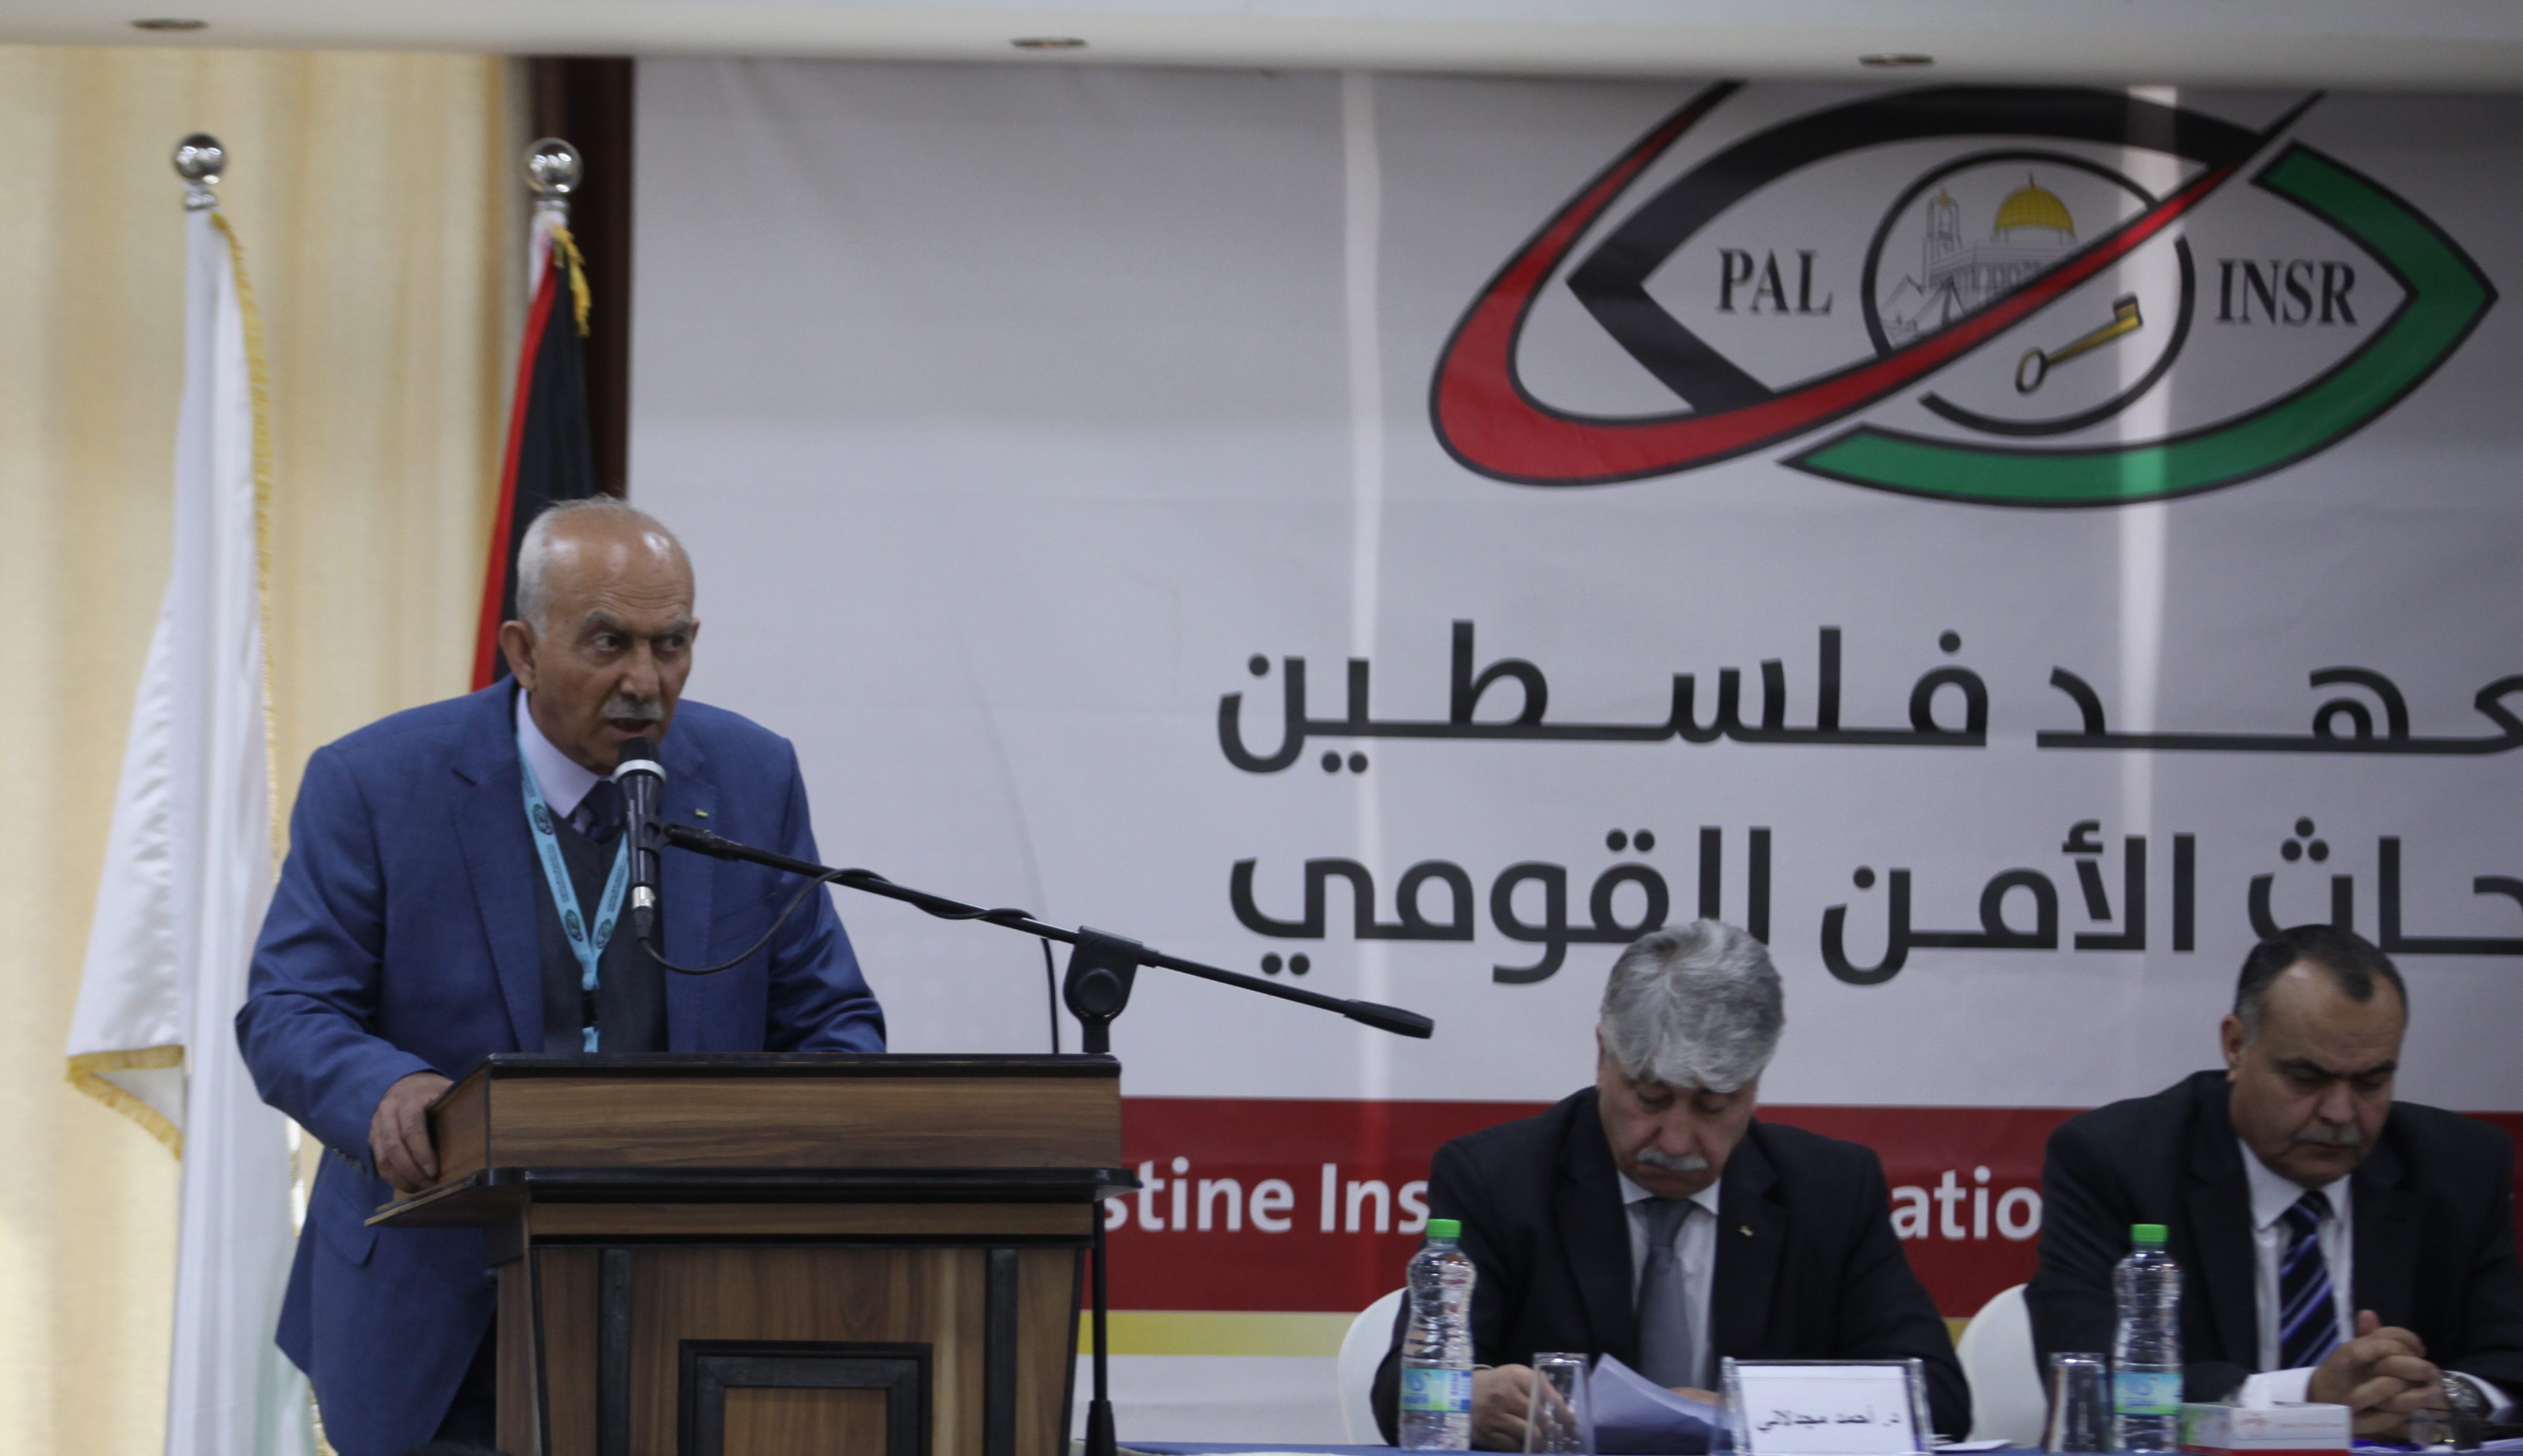 ندوة في رام الله: رفض صفقة القرن ودويلة غزة والحلول الانسانية على حساب الحقوق الوطنية